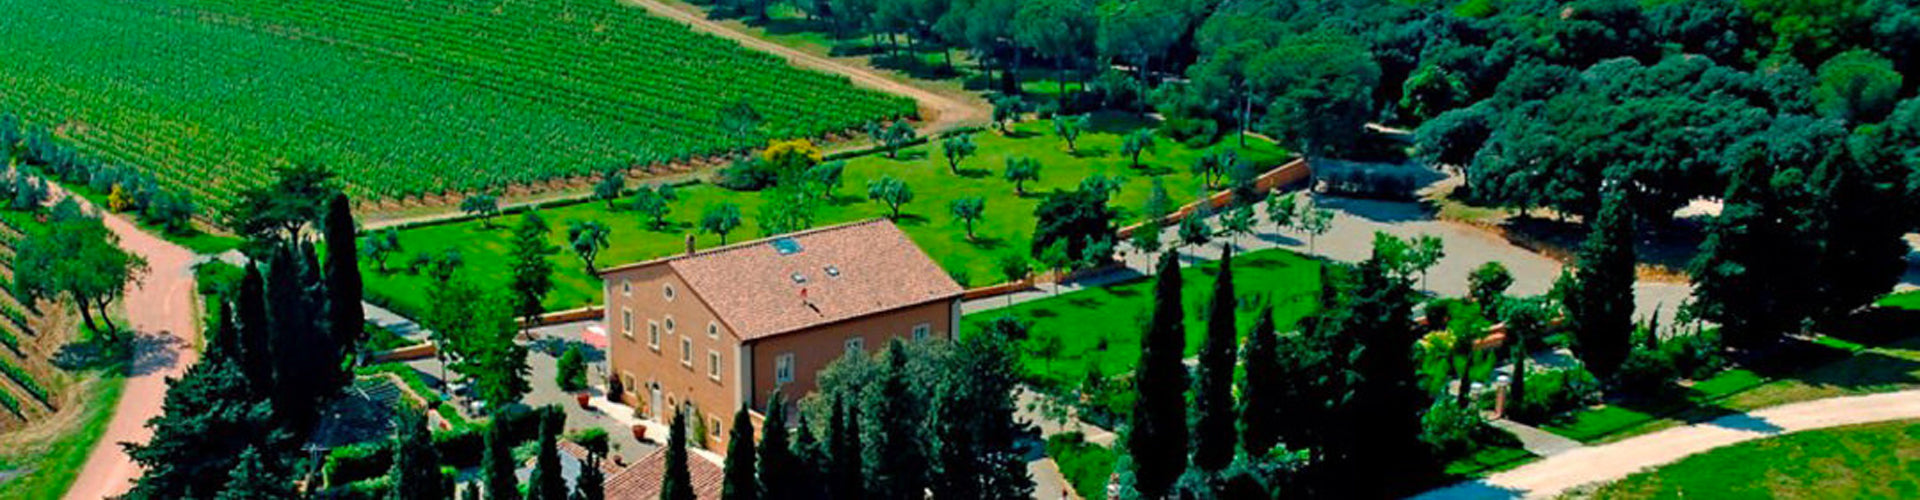 Tenuta di Biserno Tuscan Villa